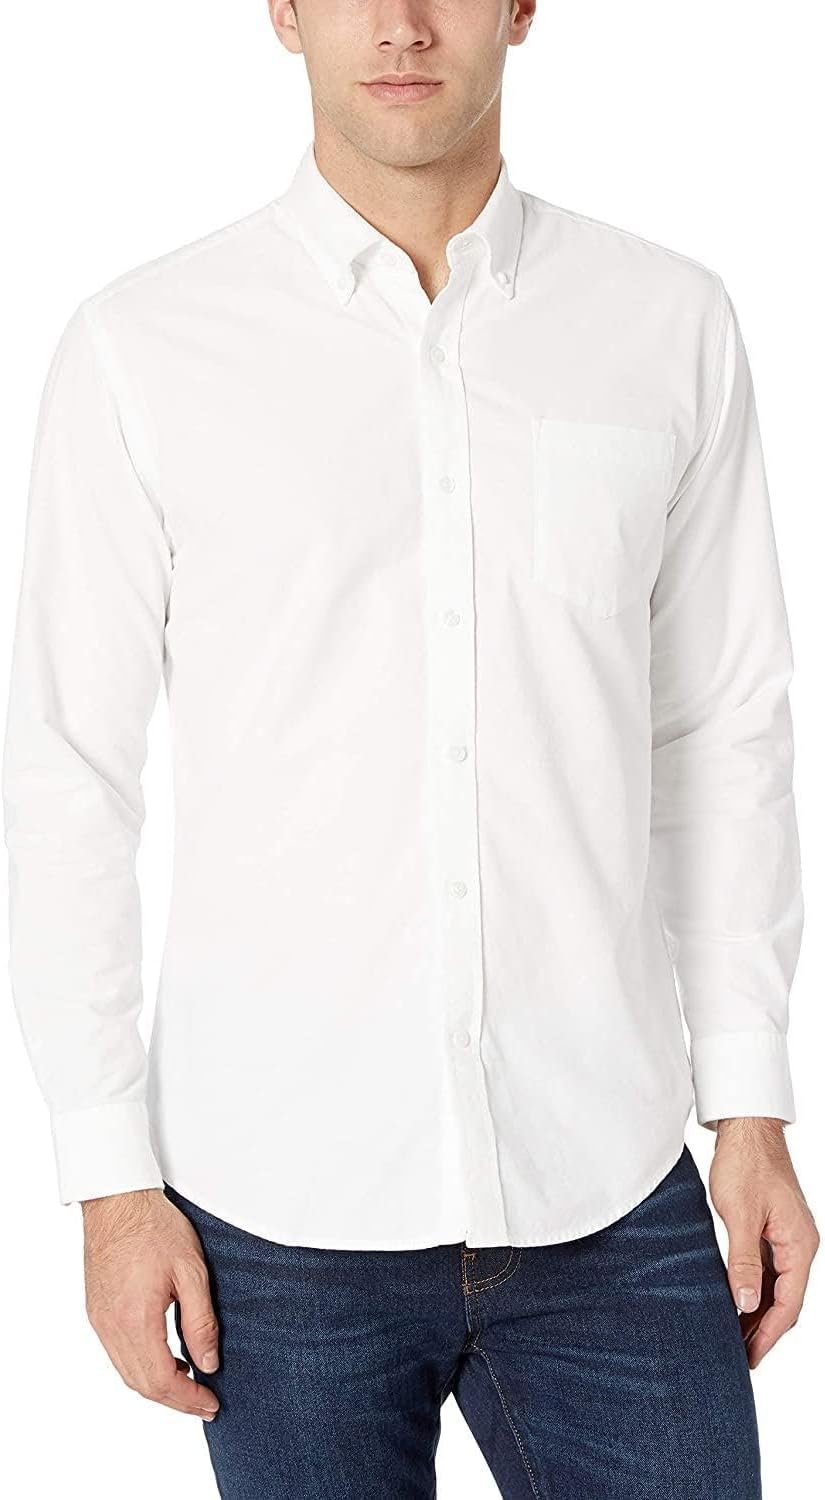 Marquis Men’s Regular Fit Long Sleeve Button Down Oxford 100% Cotton Dress Shirt